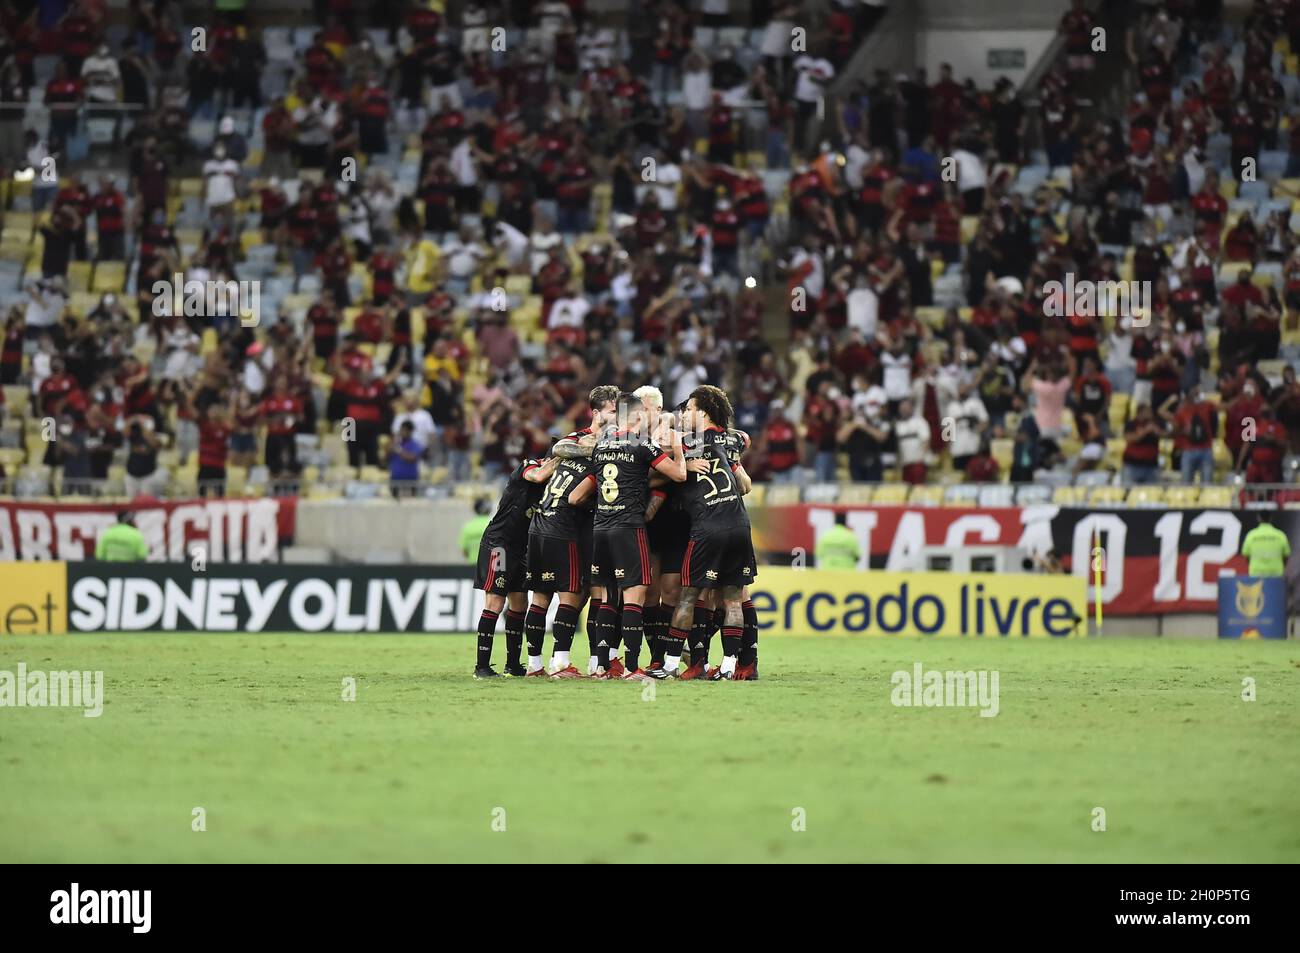 Die Spieler von Flamengo feiern, nachdem sie ihr drittes Tor von Andreas Pereira gegen Juventude beim Campeonato Brasileiro (Brasilianischer Nationalspieler) erzielt haben Stockfoto